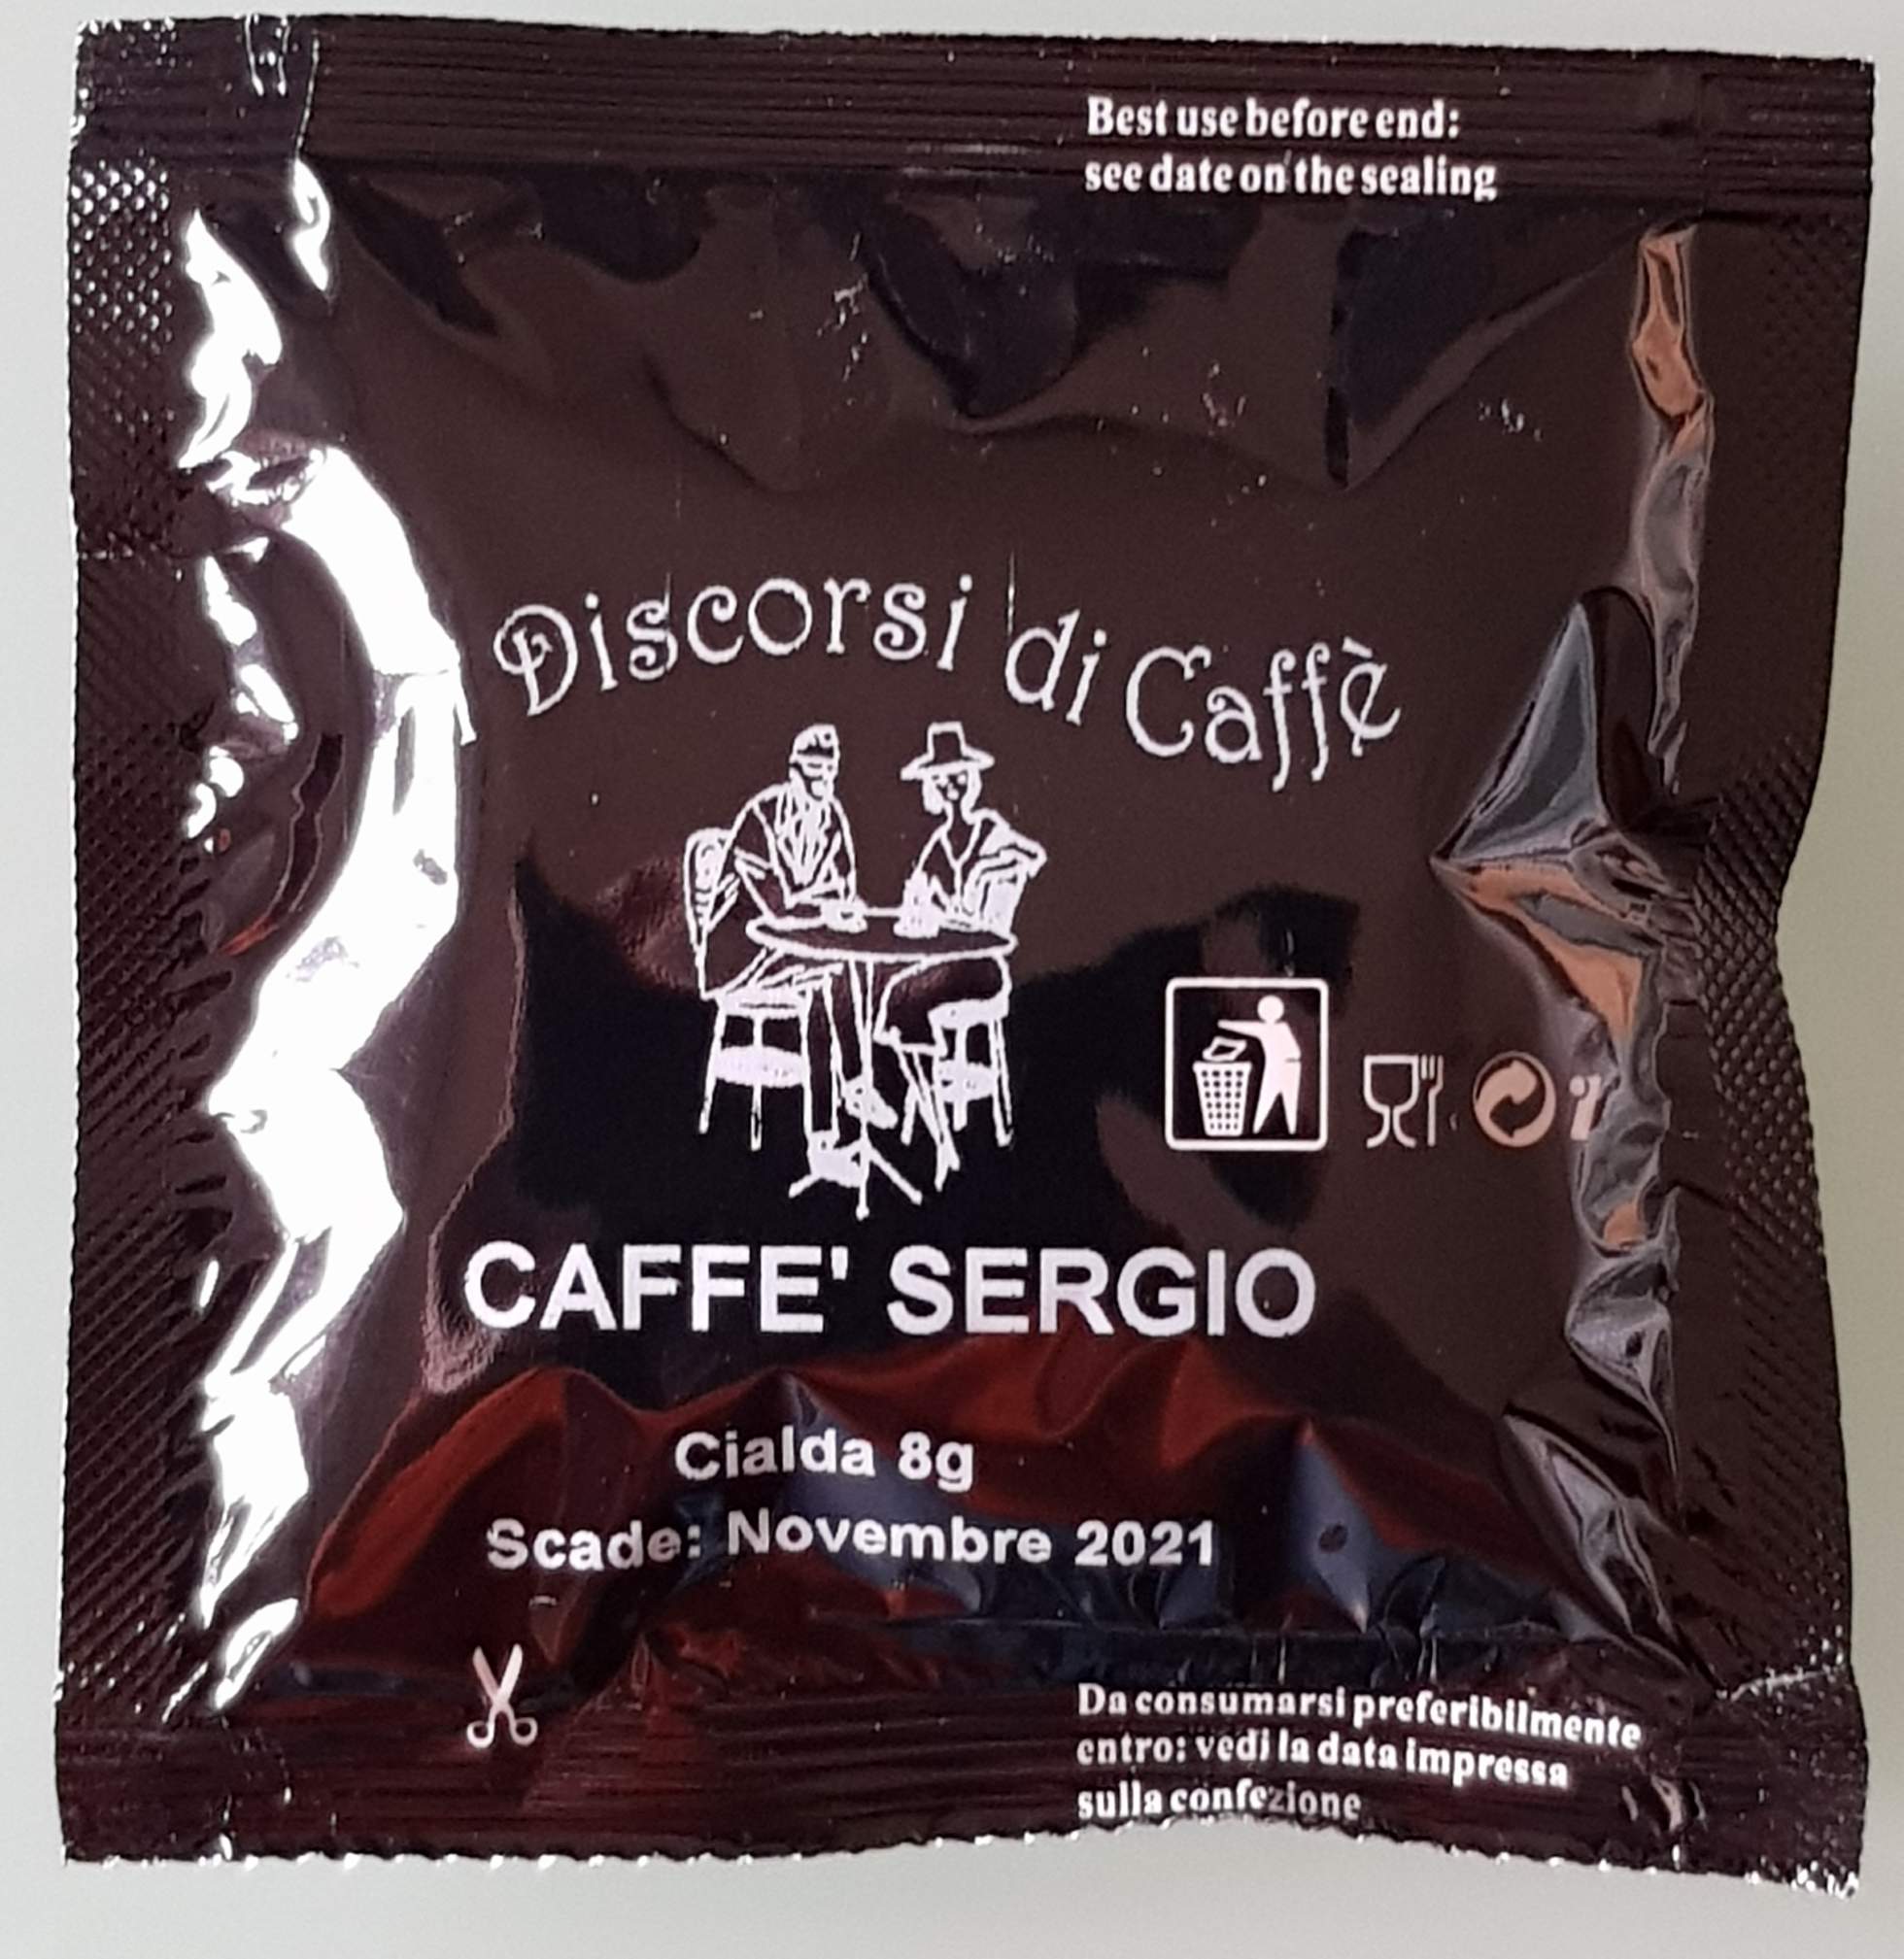 Caffè Sergio 150 cialde - Spedizione o consegna a Palermo inclusa nel prezzo - € 0,146 cialda